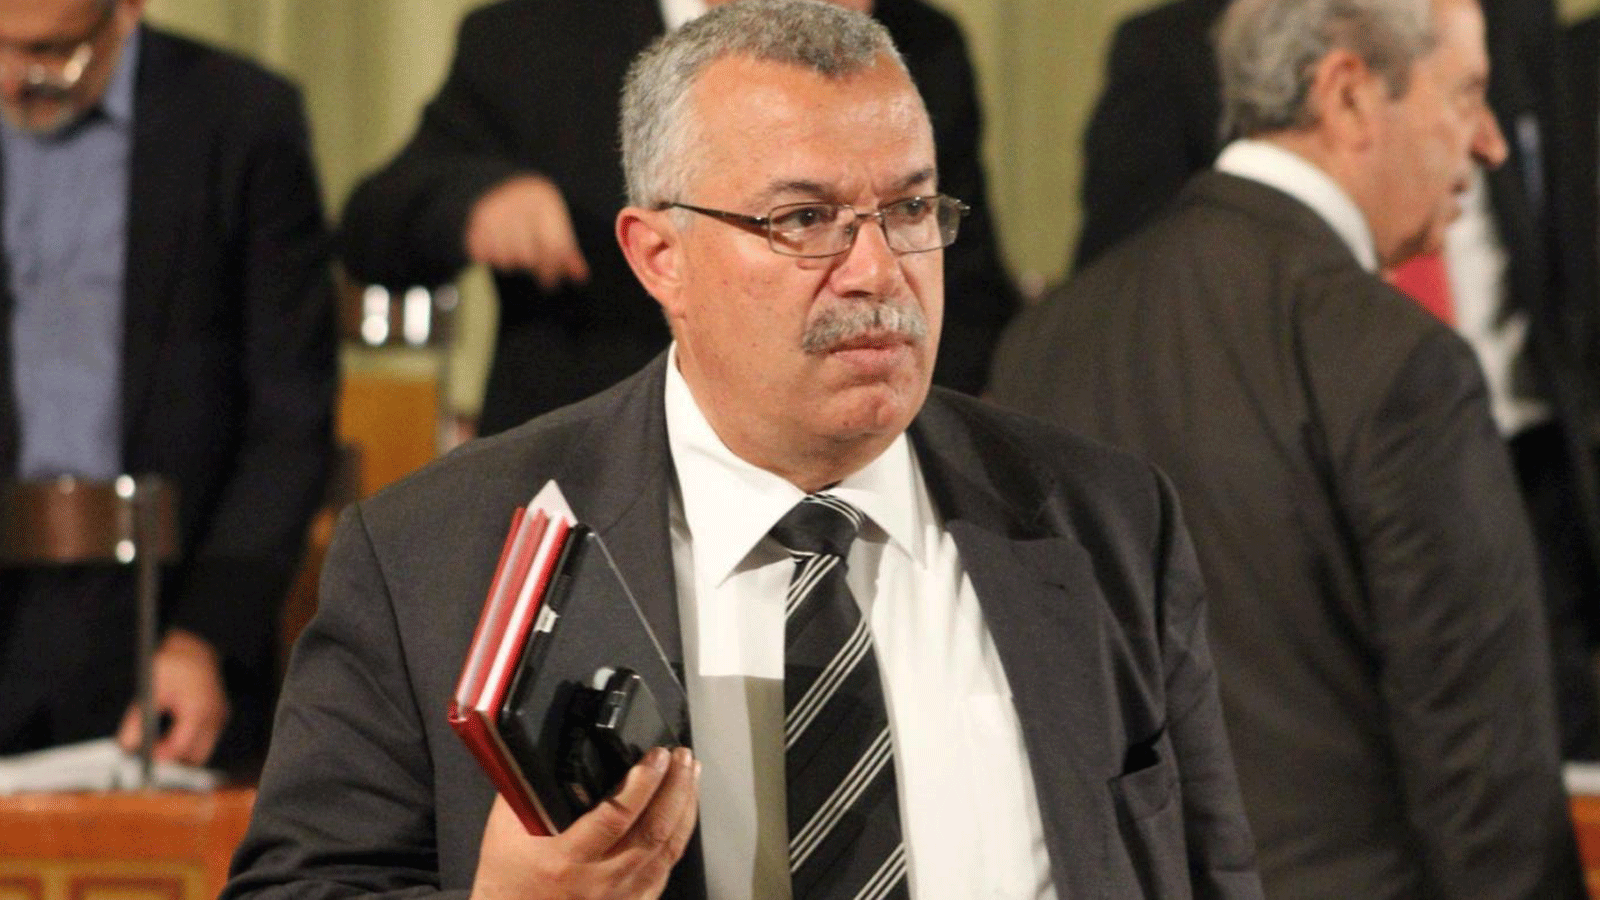 دوافع توقيف نائب رئيس حزب النهضة التونسي ومكان احتجازه لا تزال مجهولة